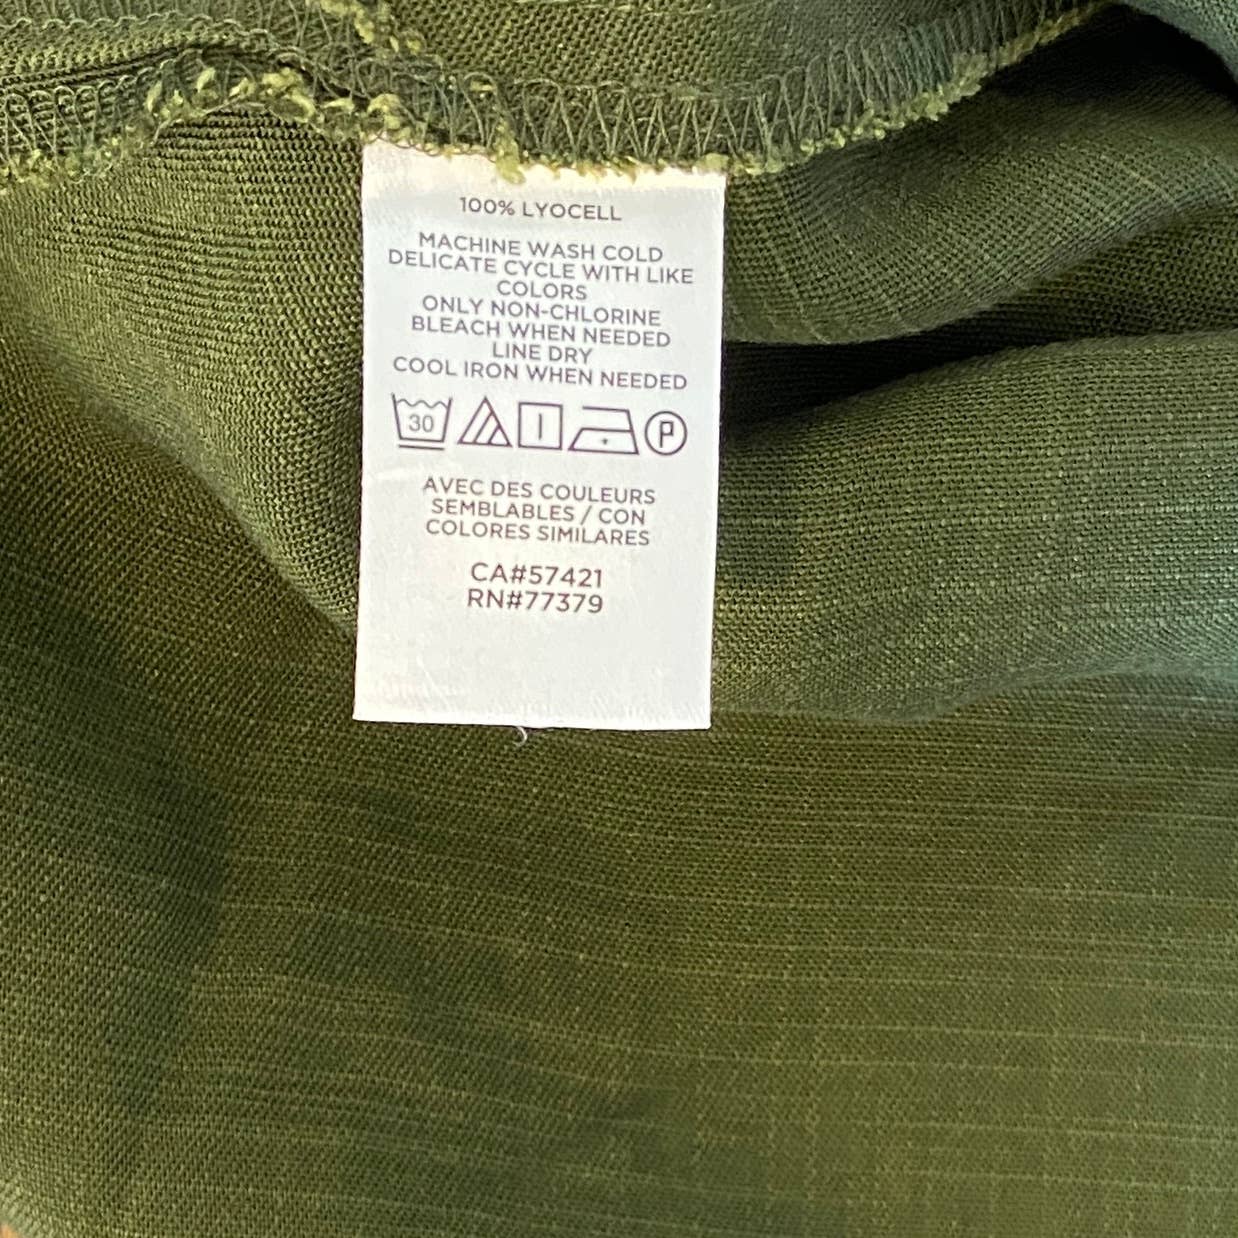 Ann Taylor Factory Dark Green Short Sleeve Button Top - Women's Size Small